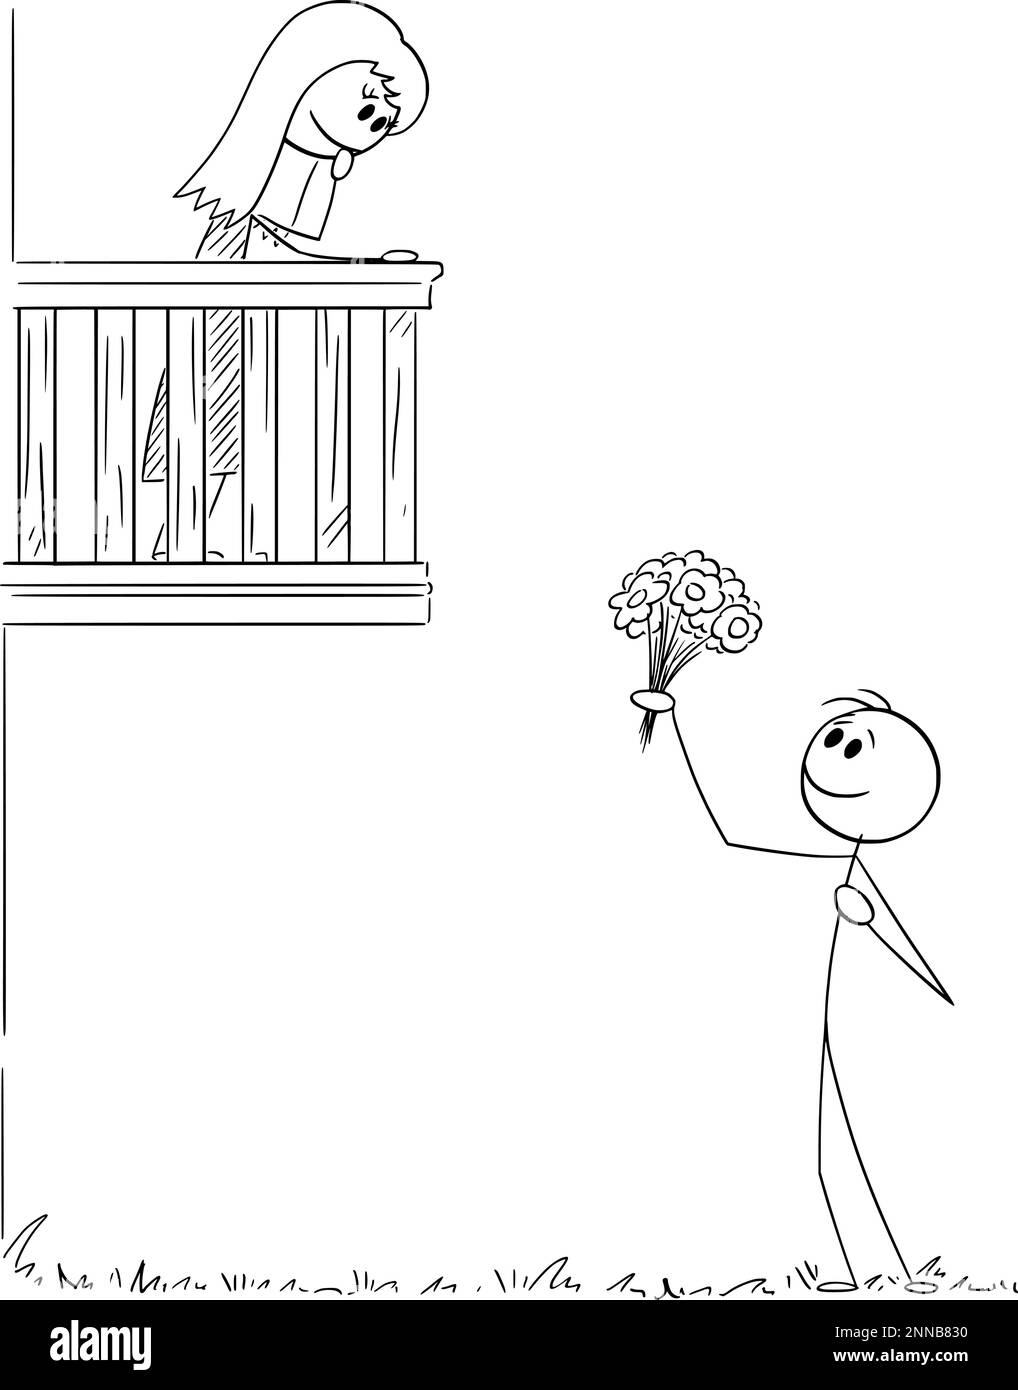 Amante confessante l'amore alla ragazza sul balcone, disegno del bastone del cartone vettoriale Illustrazione Vettoriale